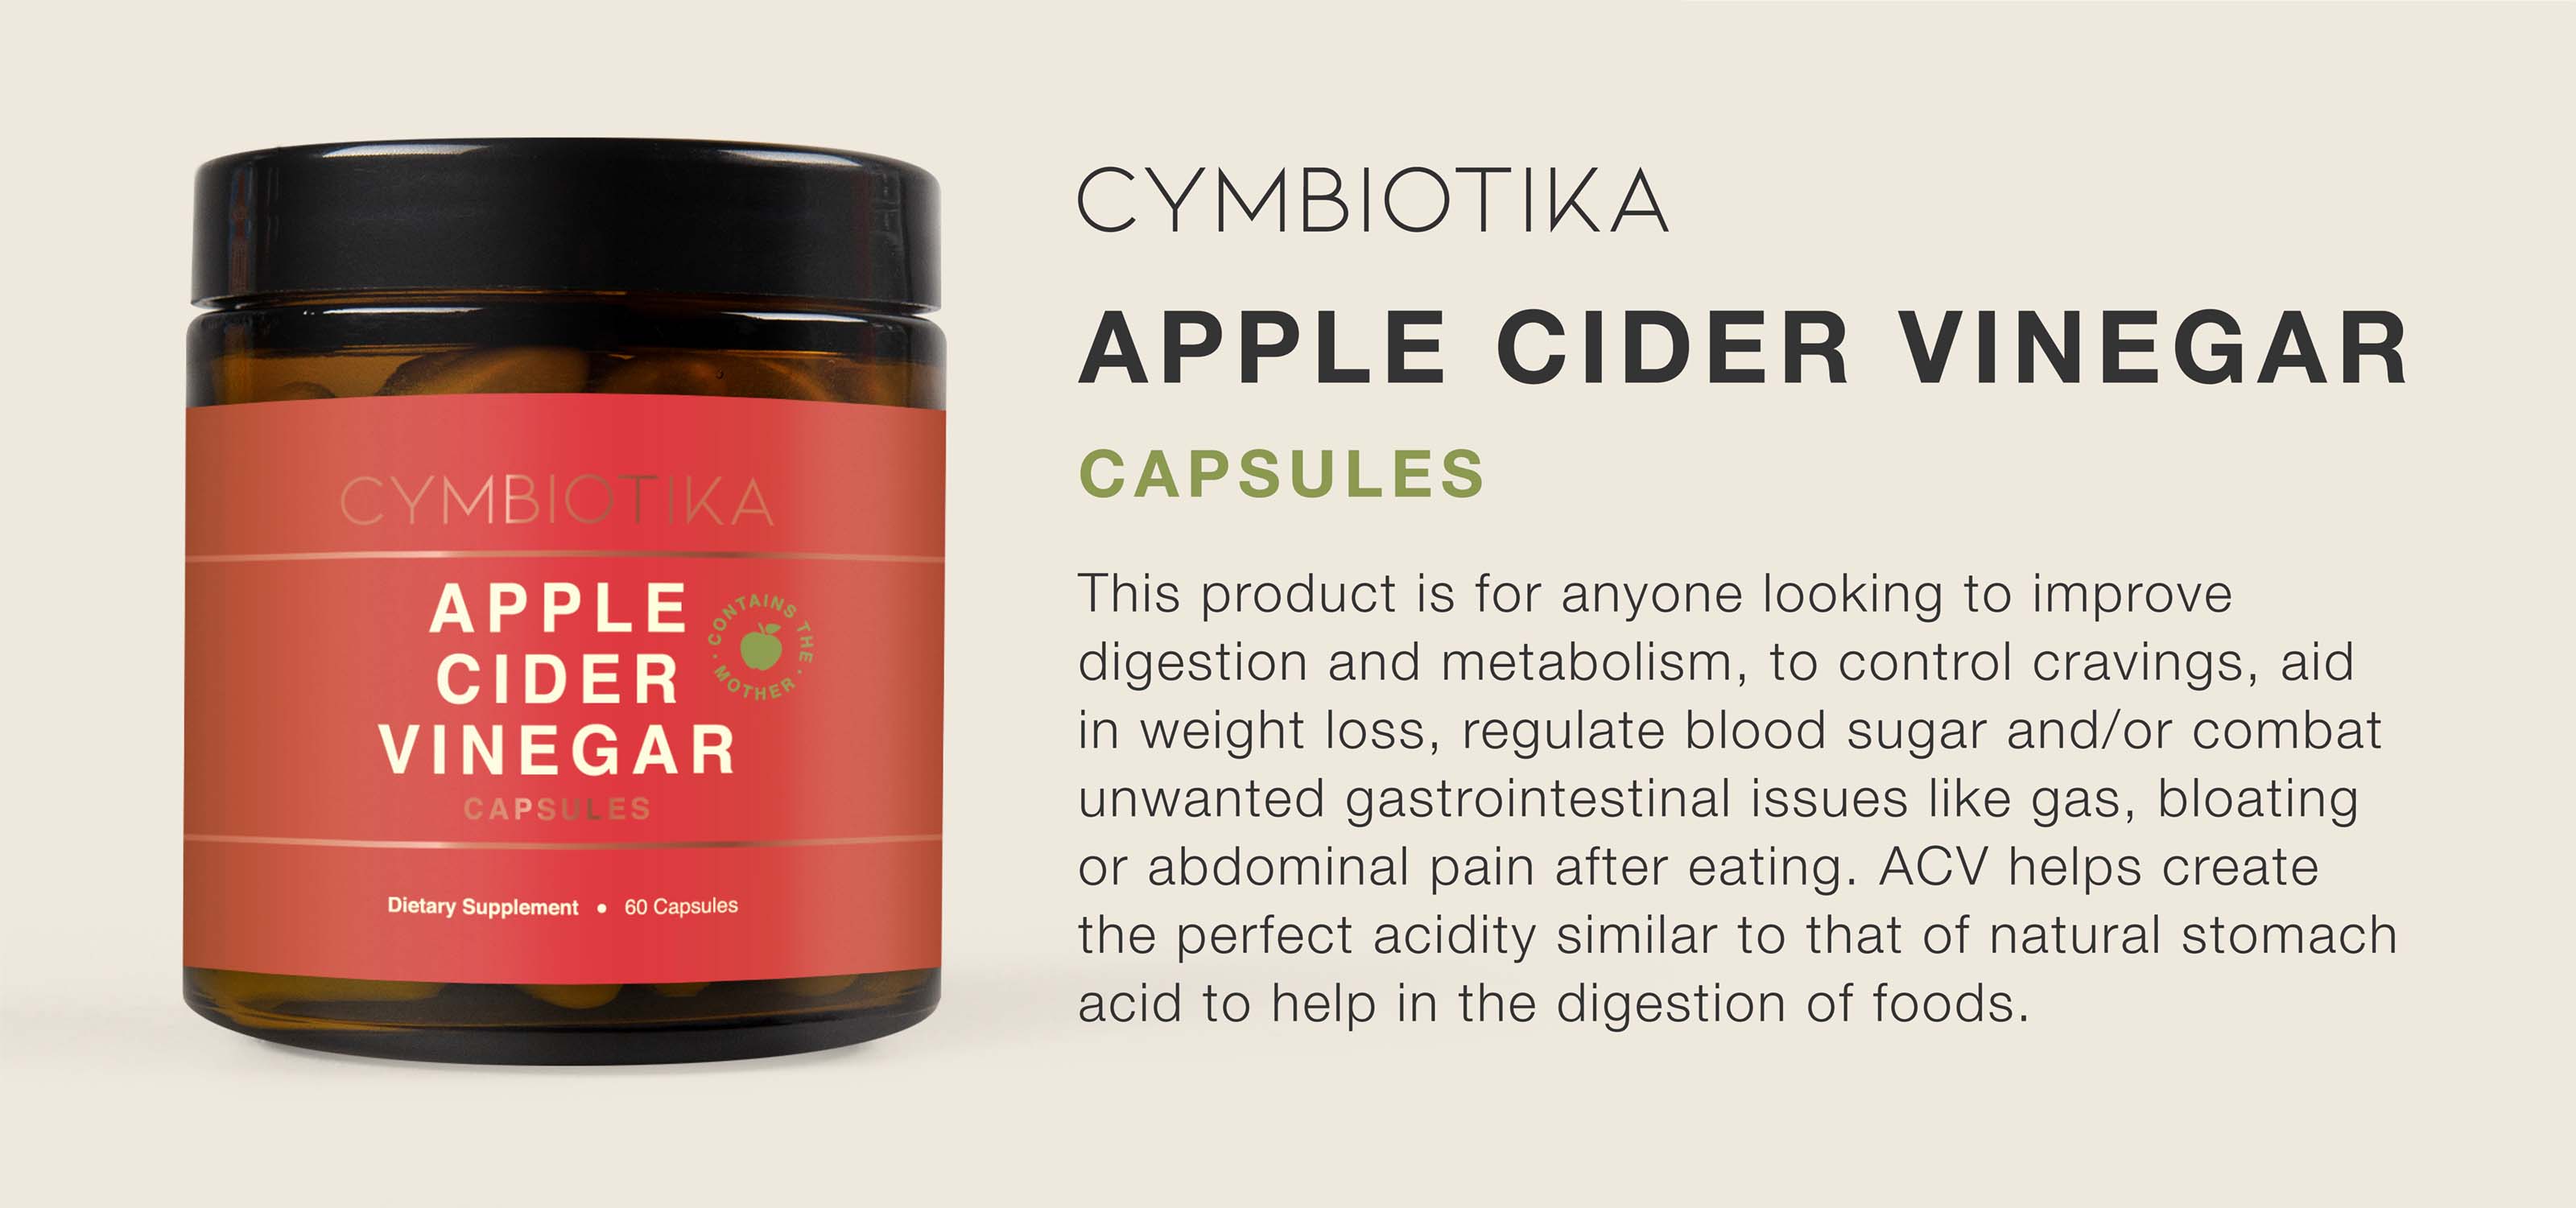 Las cápsulas de vinagre de sidra de manzana Cymbiotika son para cualquiera que busque mejorar la digestión y el metabolismo.